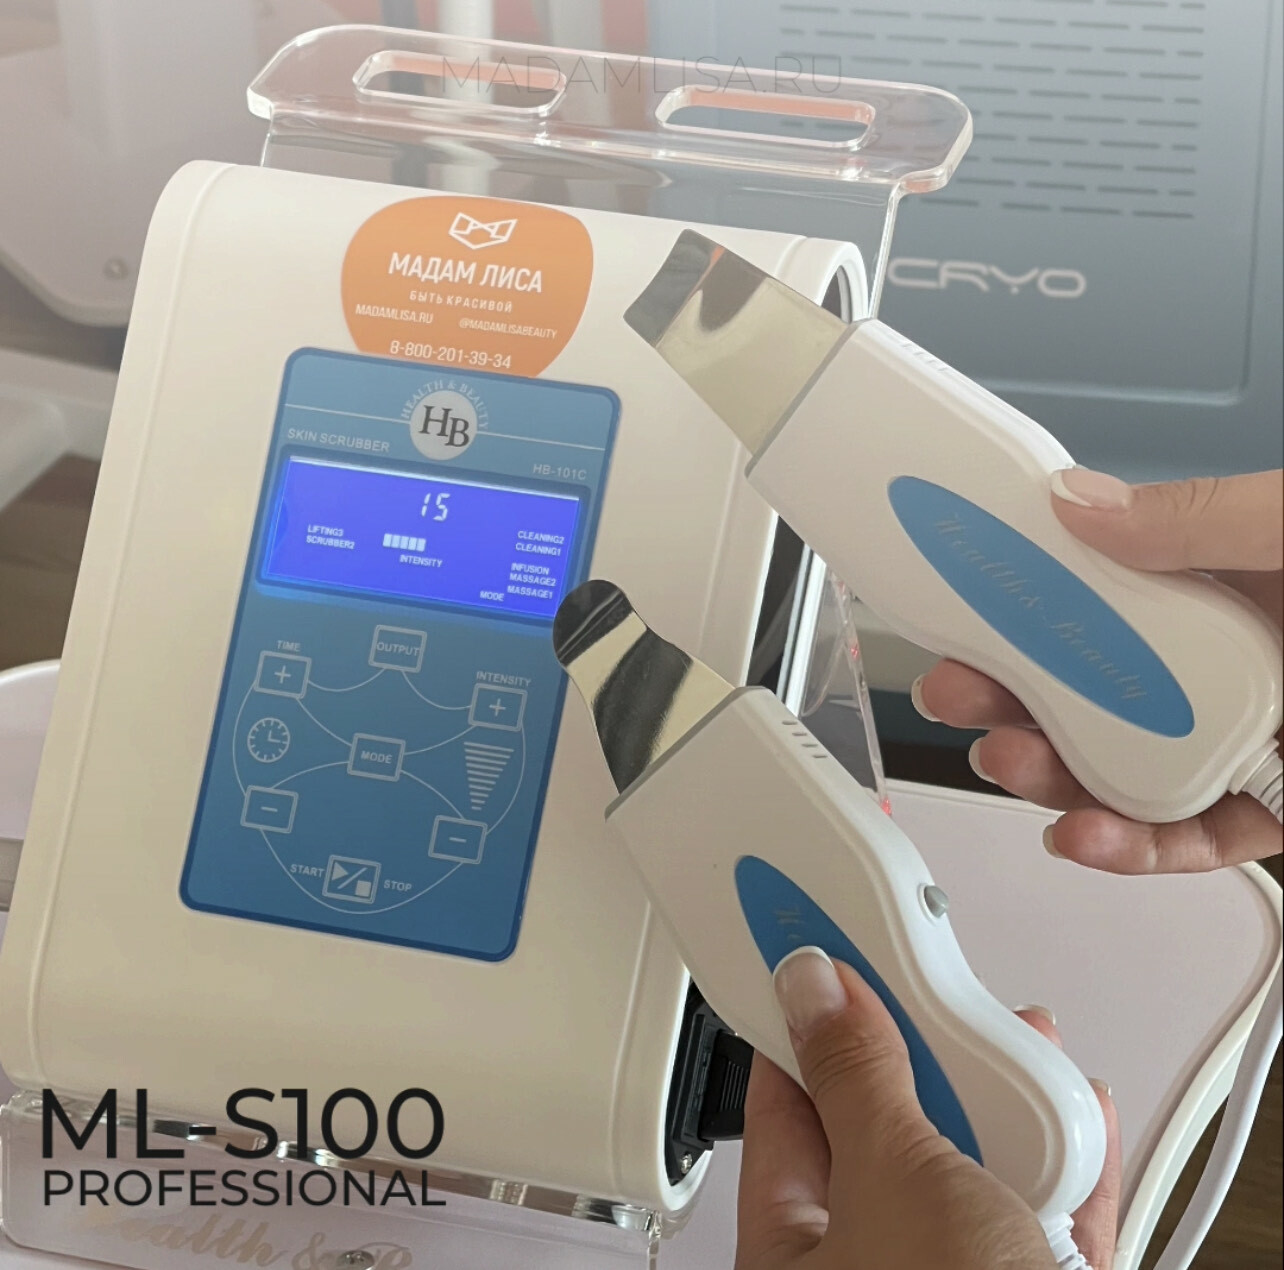 Аппарат  ML-S100 Professional